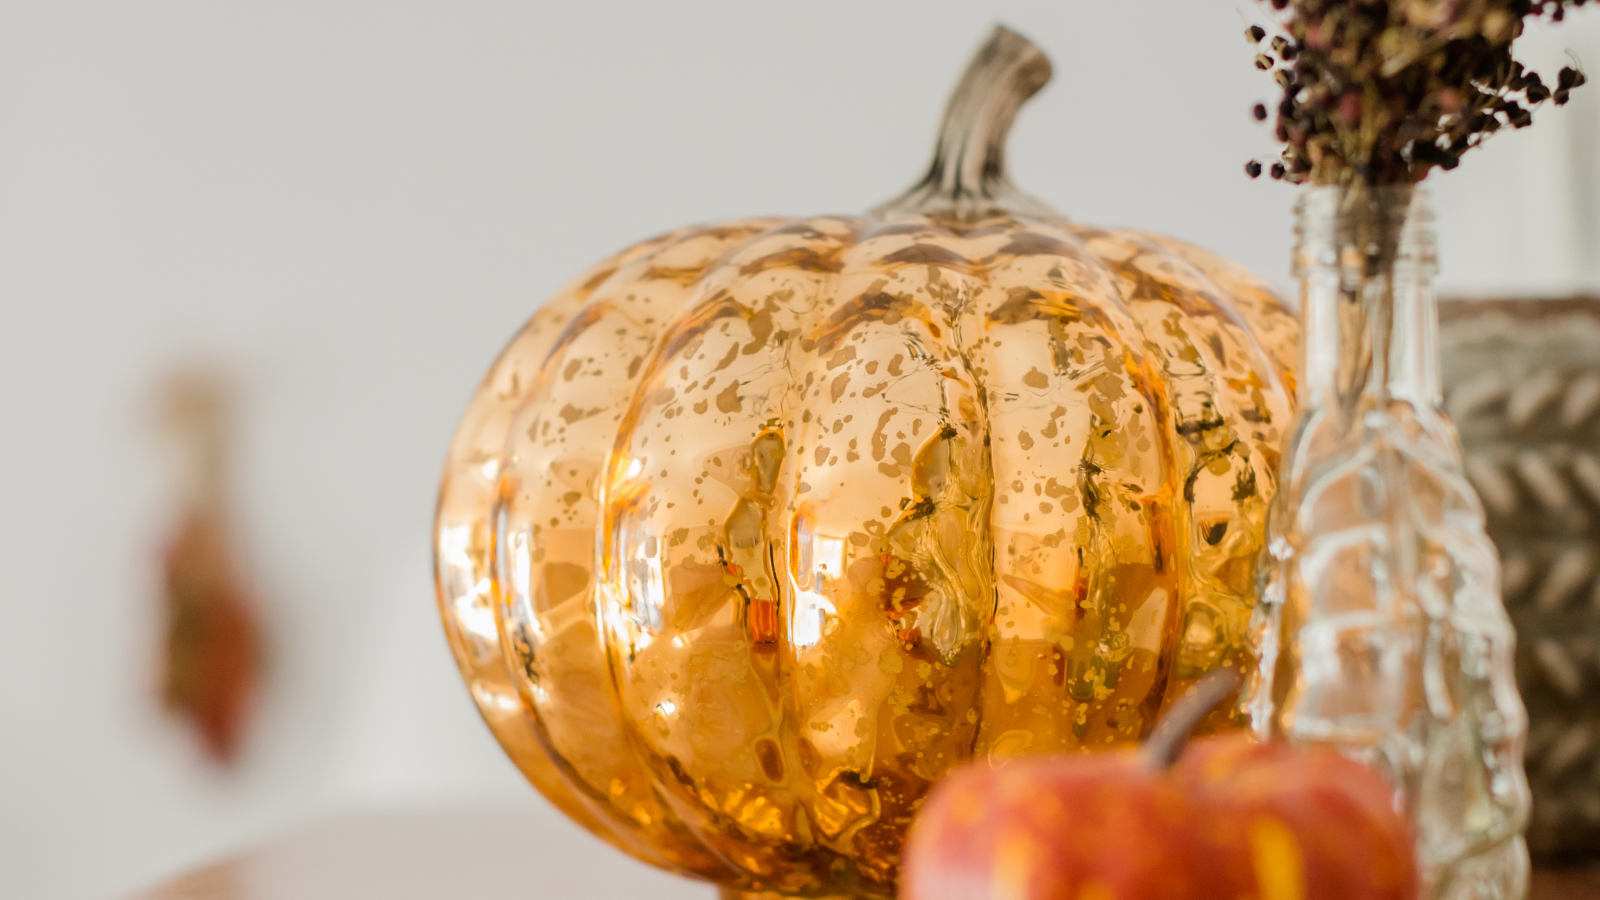 Trendy letošního podzimu vás neoslovují? Vsaďte na klasiku v podobě typických podzimních barev a dekorací ve tvaru dýně.